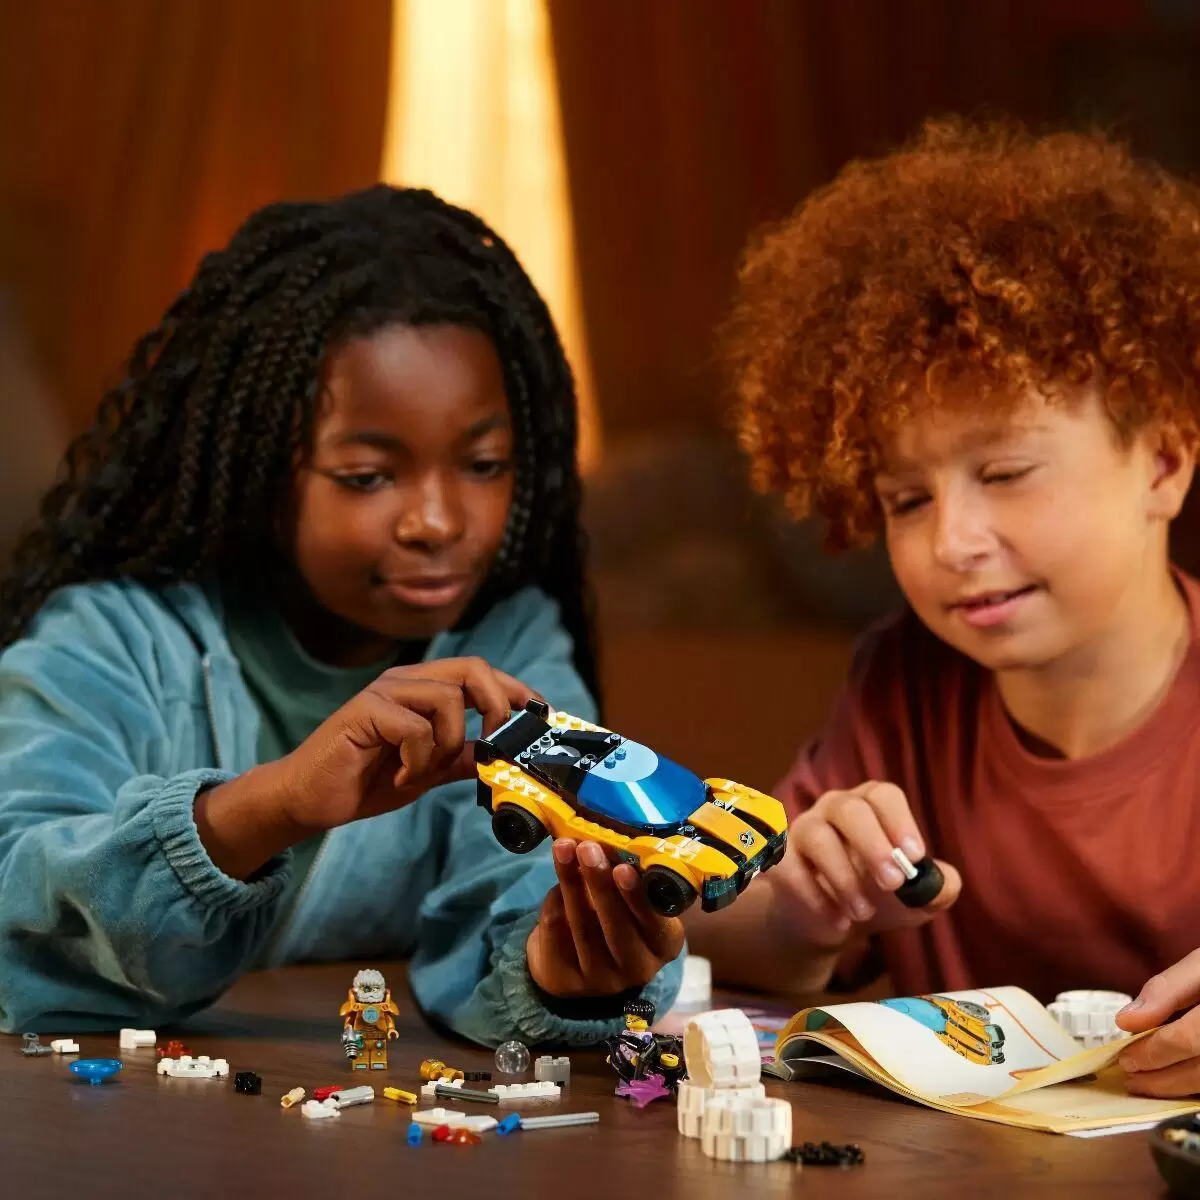 Конструктор LEGO DREAMZzz Космический автомобиль мистера Оза